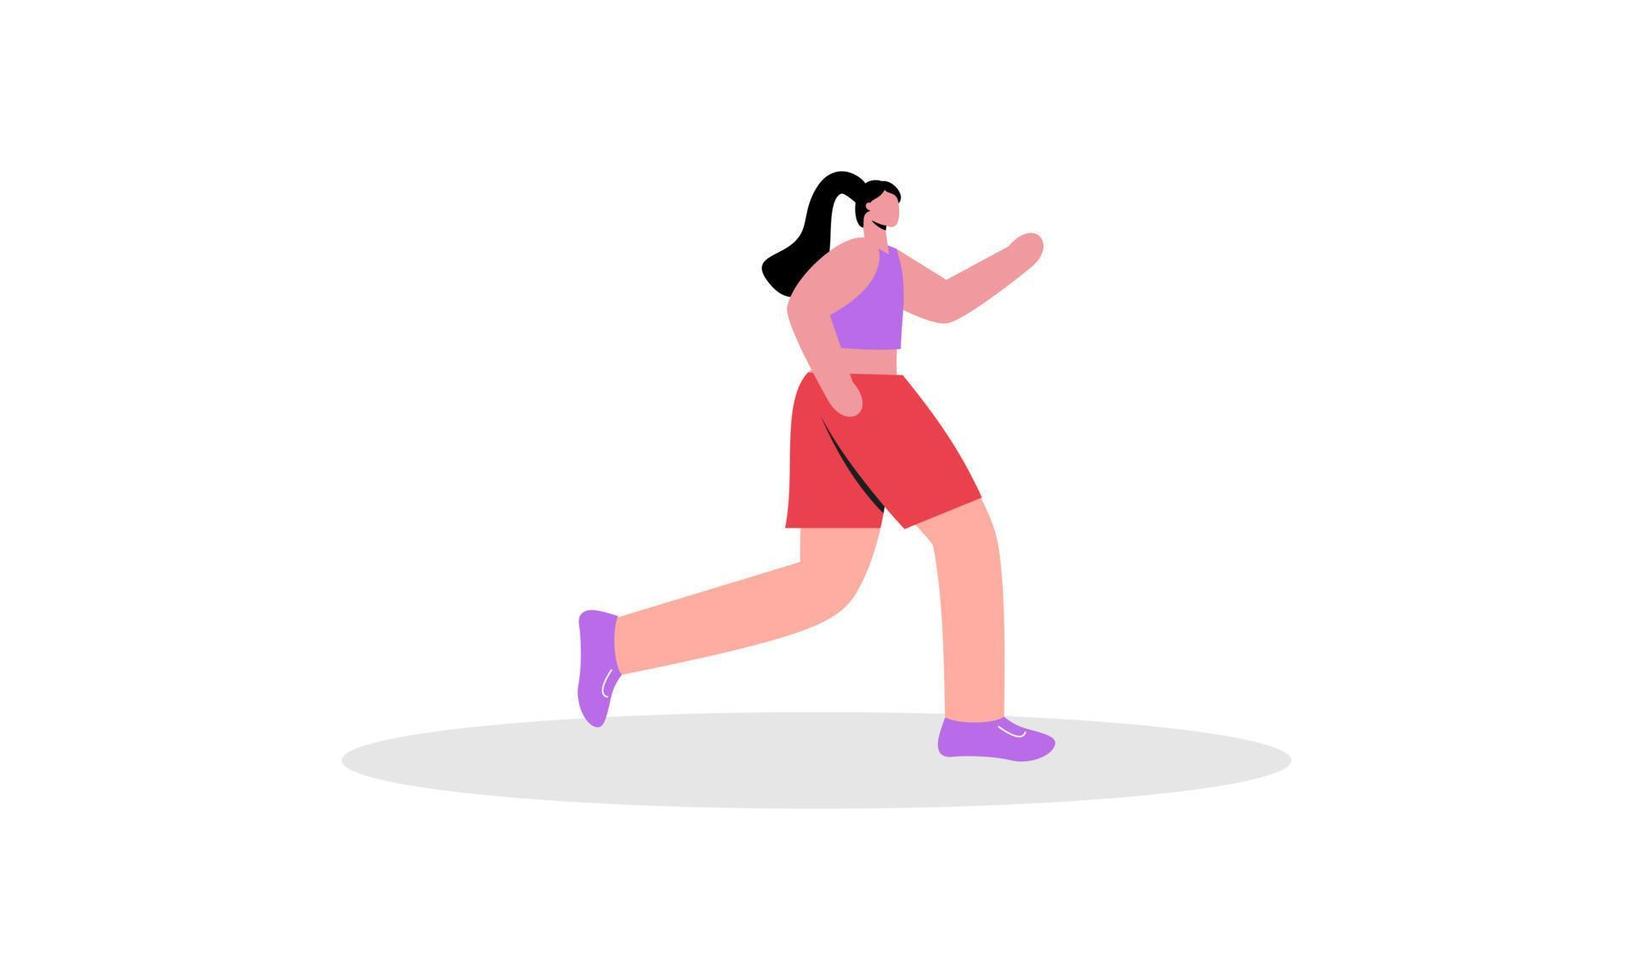 Running jogging time illustration vector